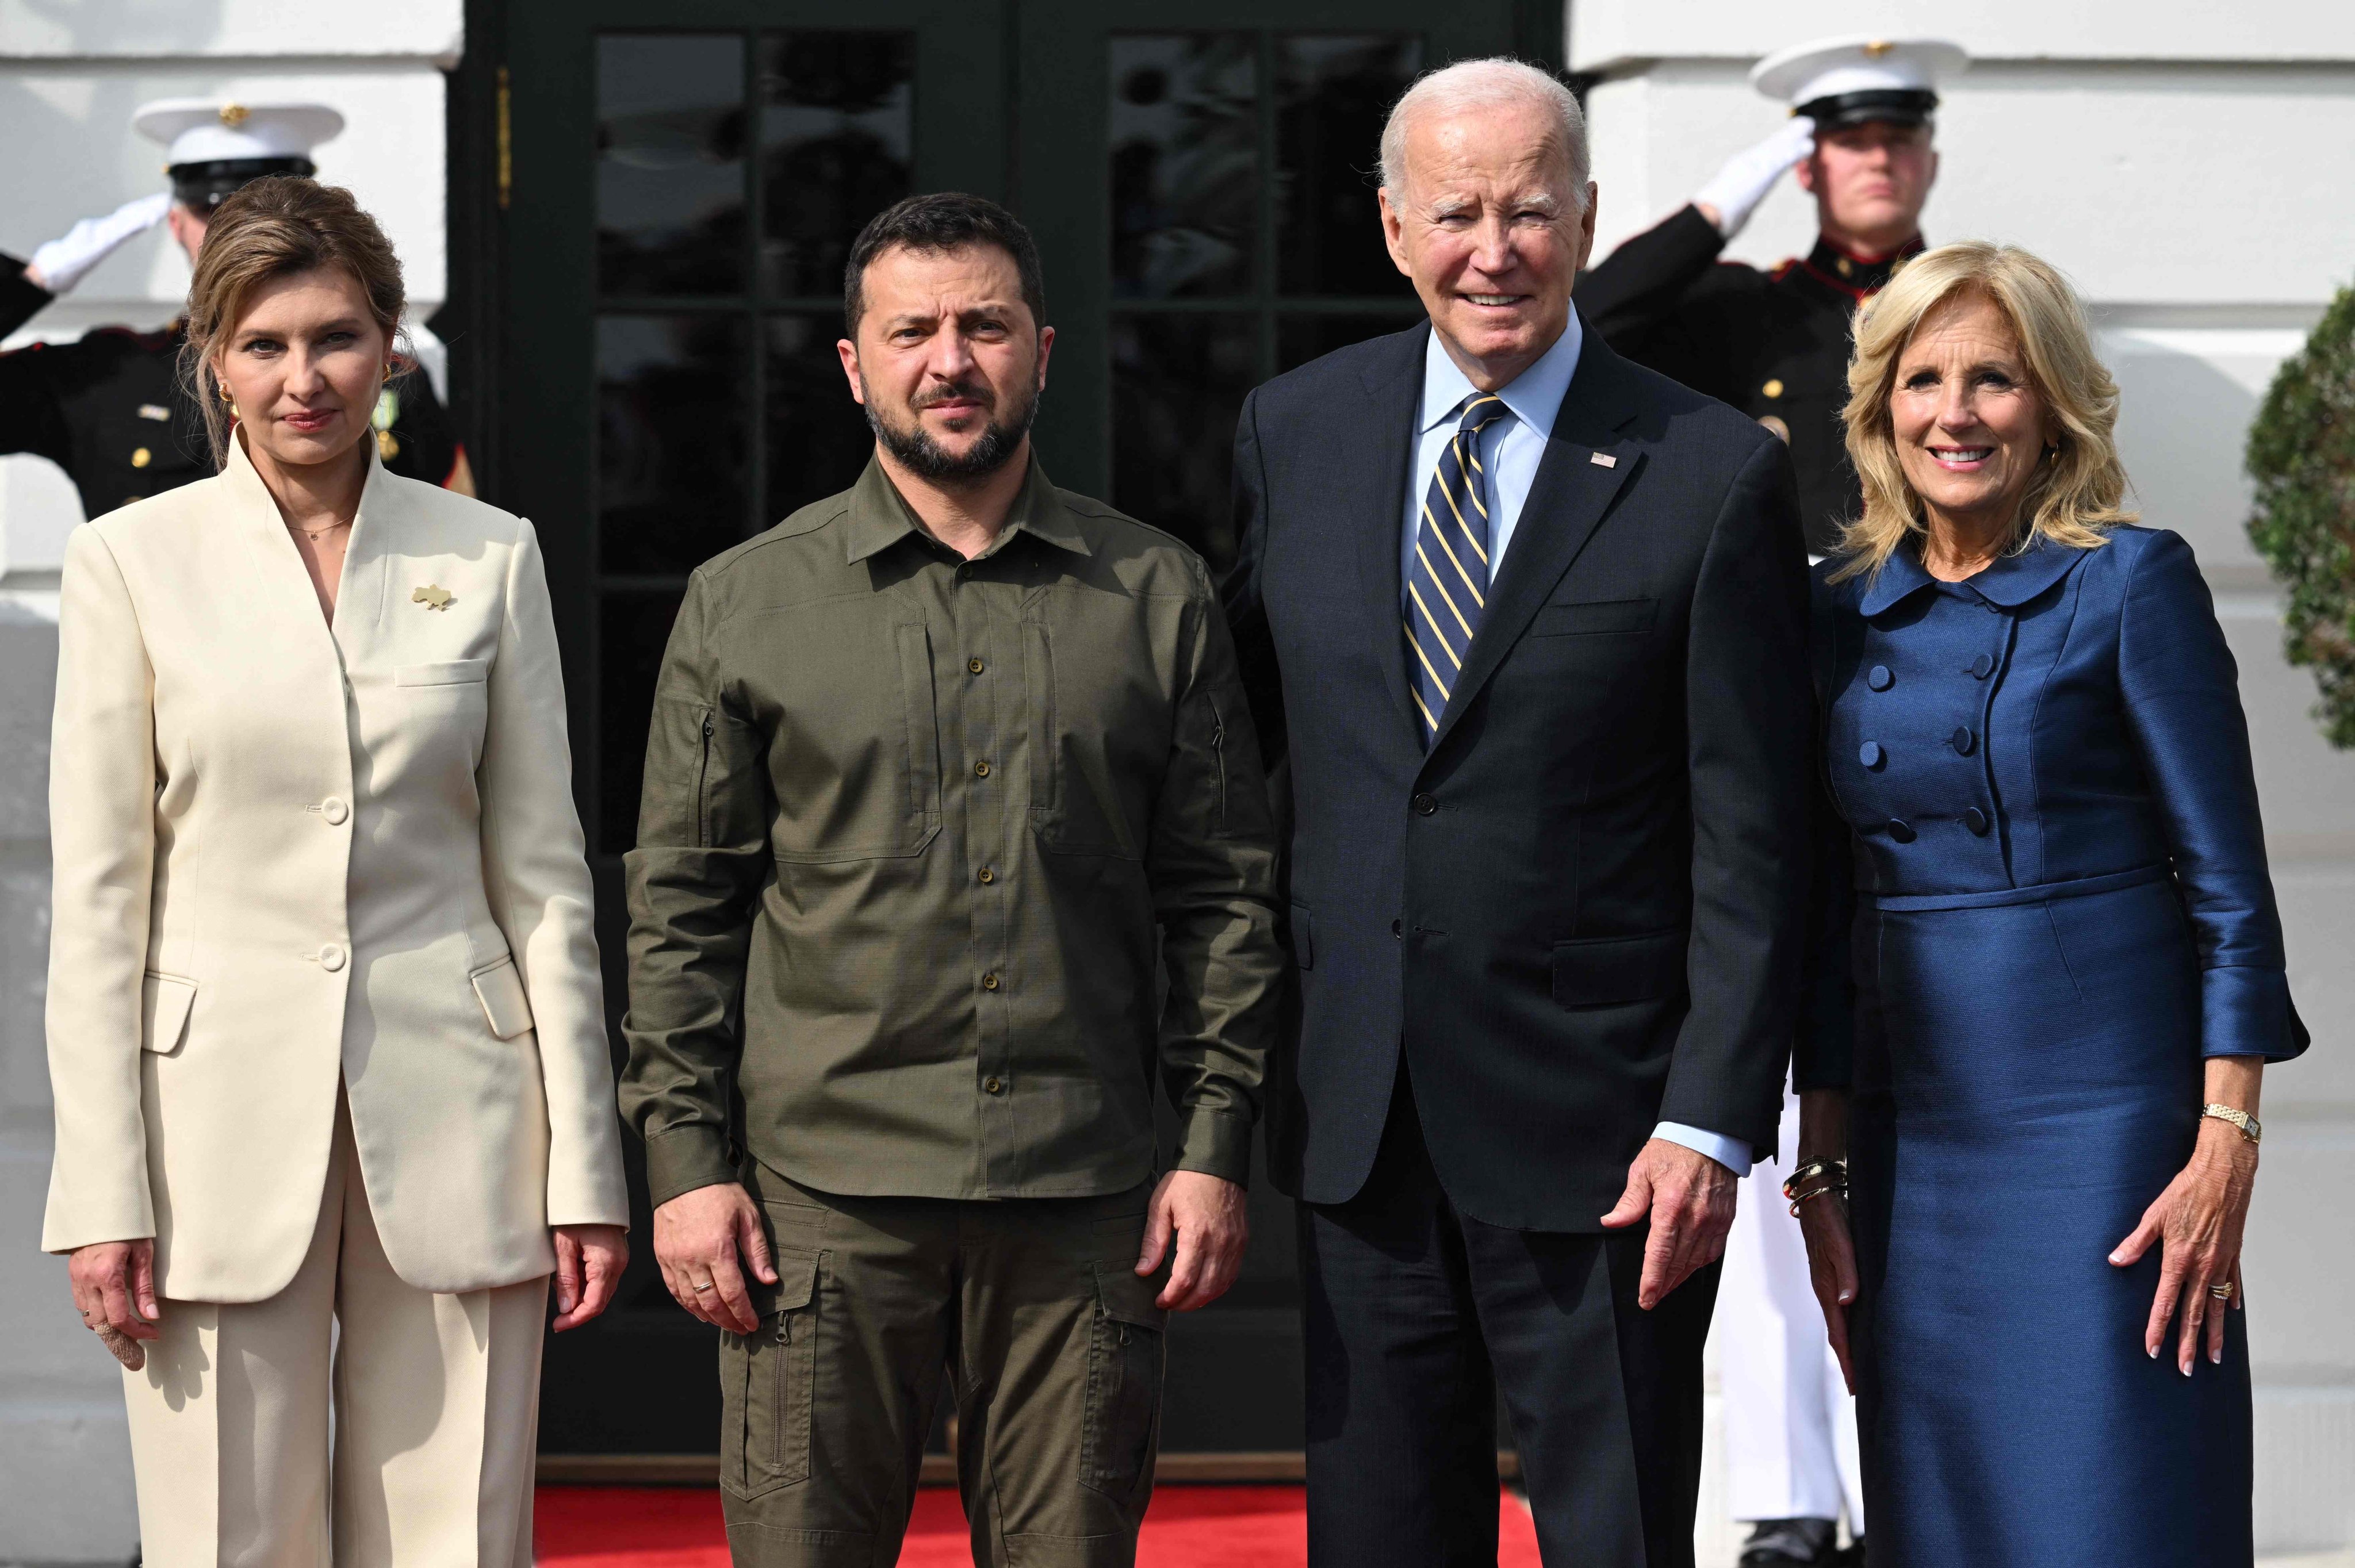 US President Joe Biden and Ukrainian President Volodymyr Zelensky at the White House in Washington on September 21. Photo: AFP